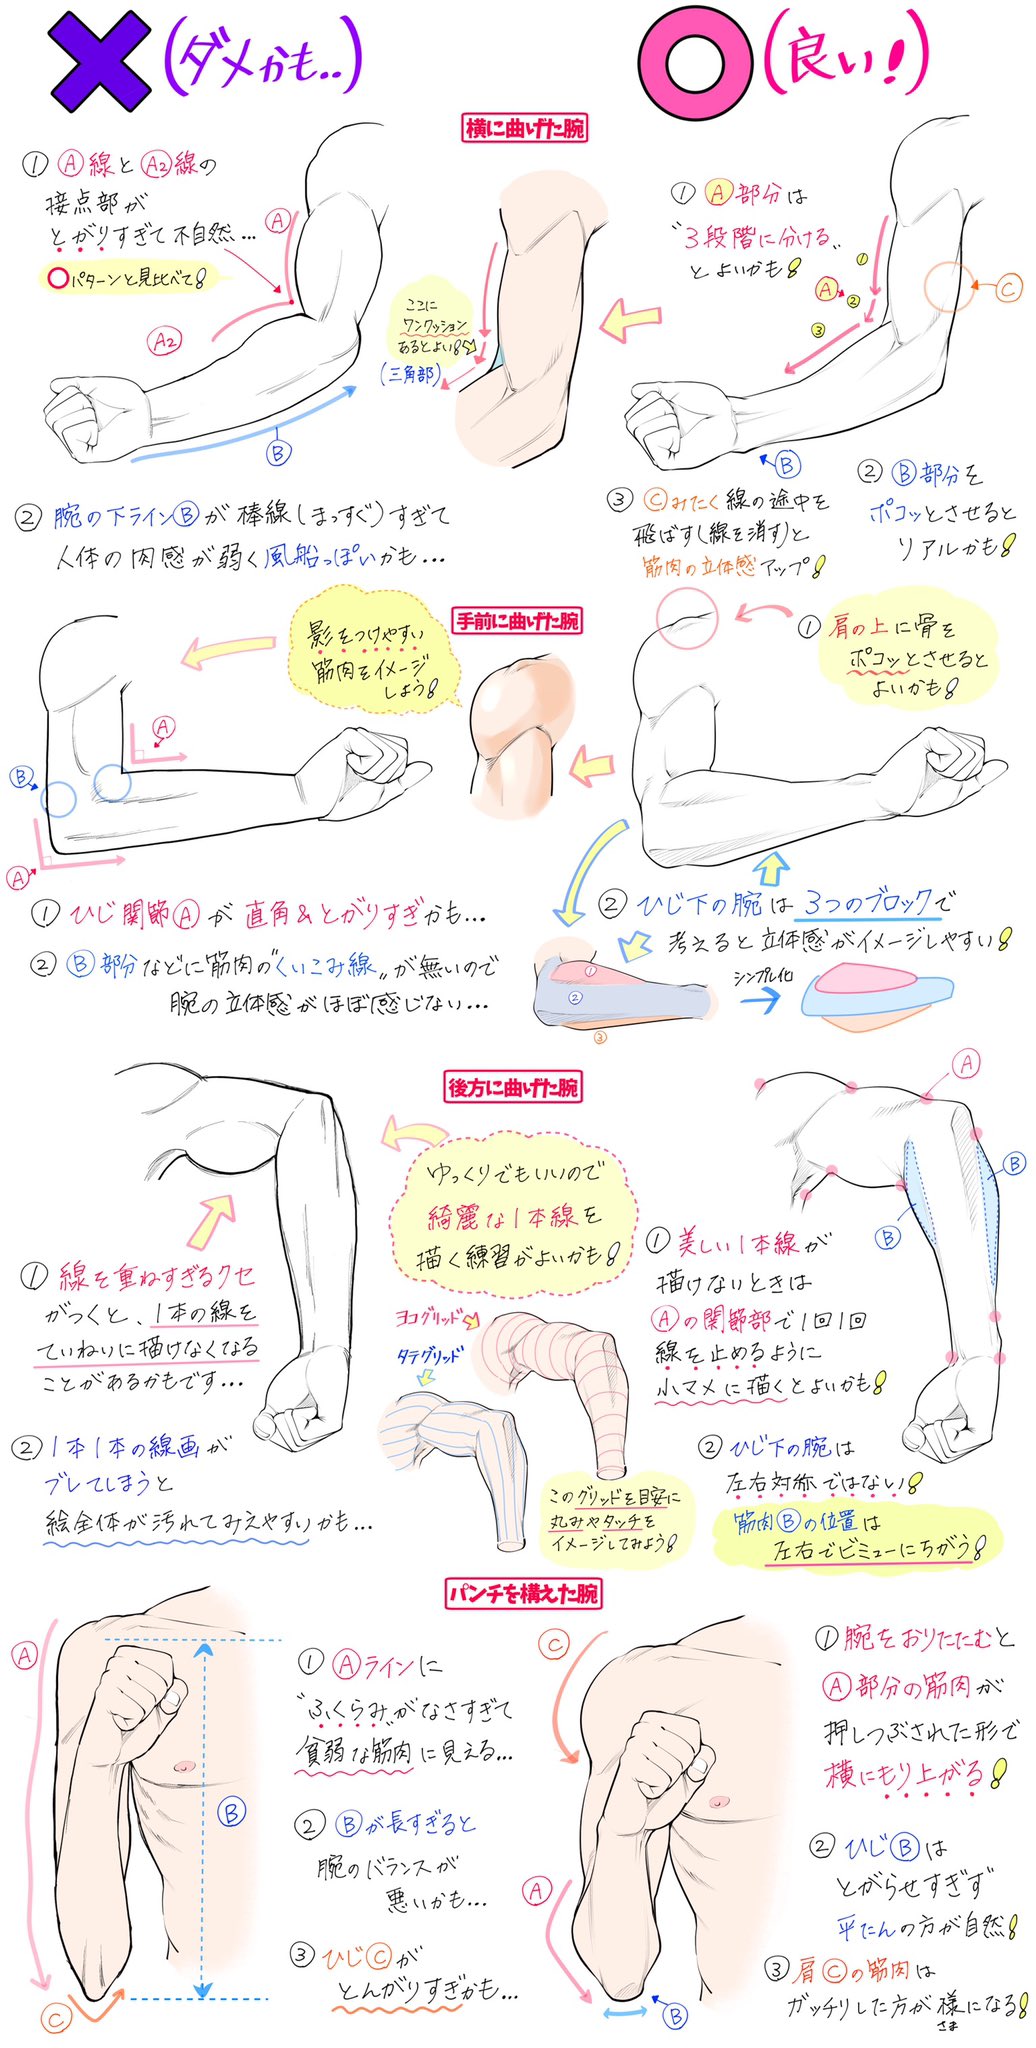 吉村拓也 イラスト講座 腕の筋肉 が上達するための 下手に見えやすい点 上手に見えやすい点 講座が細長いのでタップお薦め